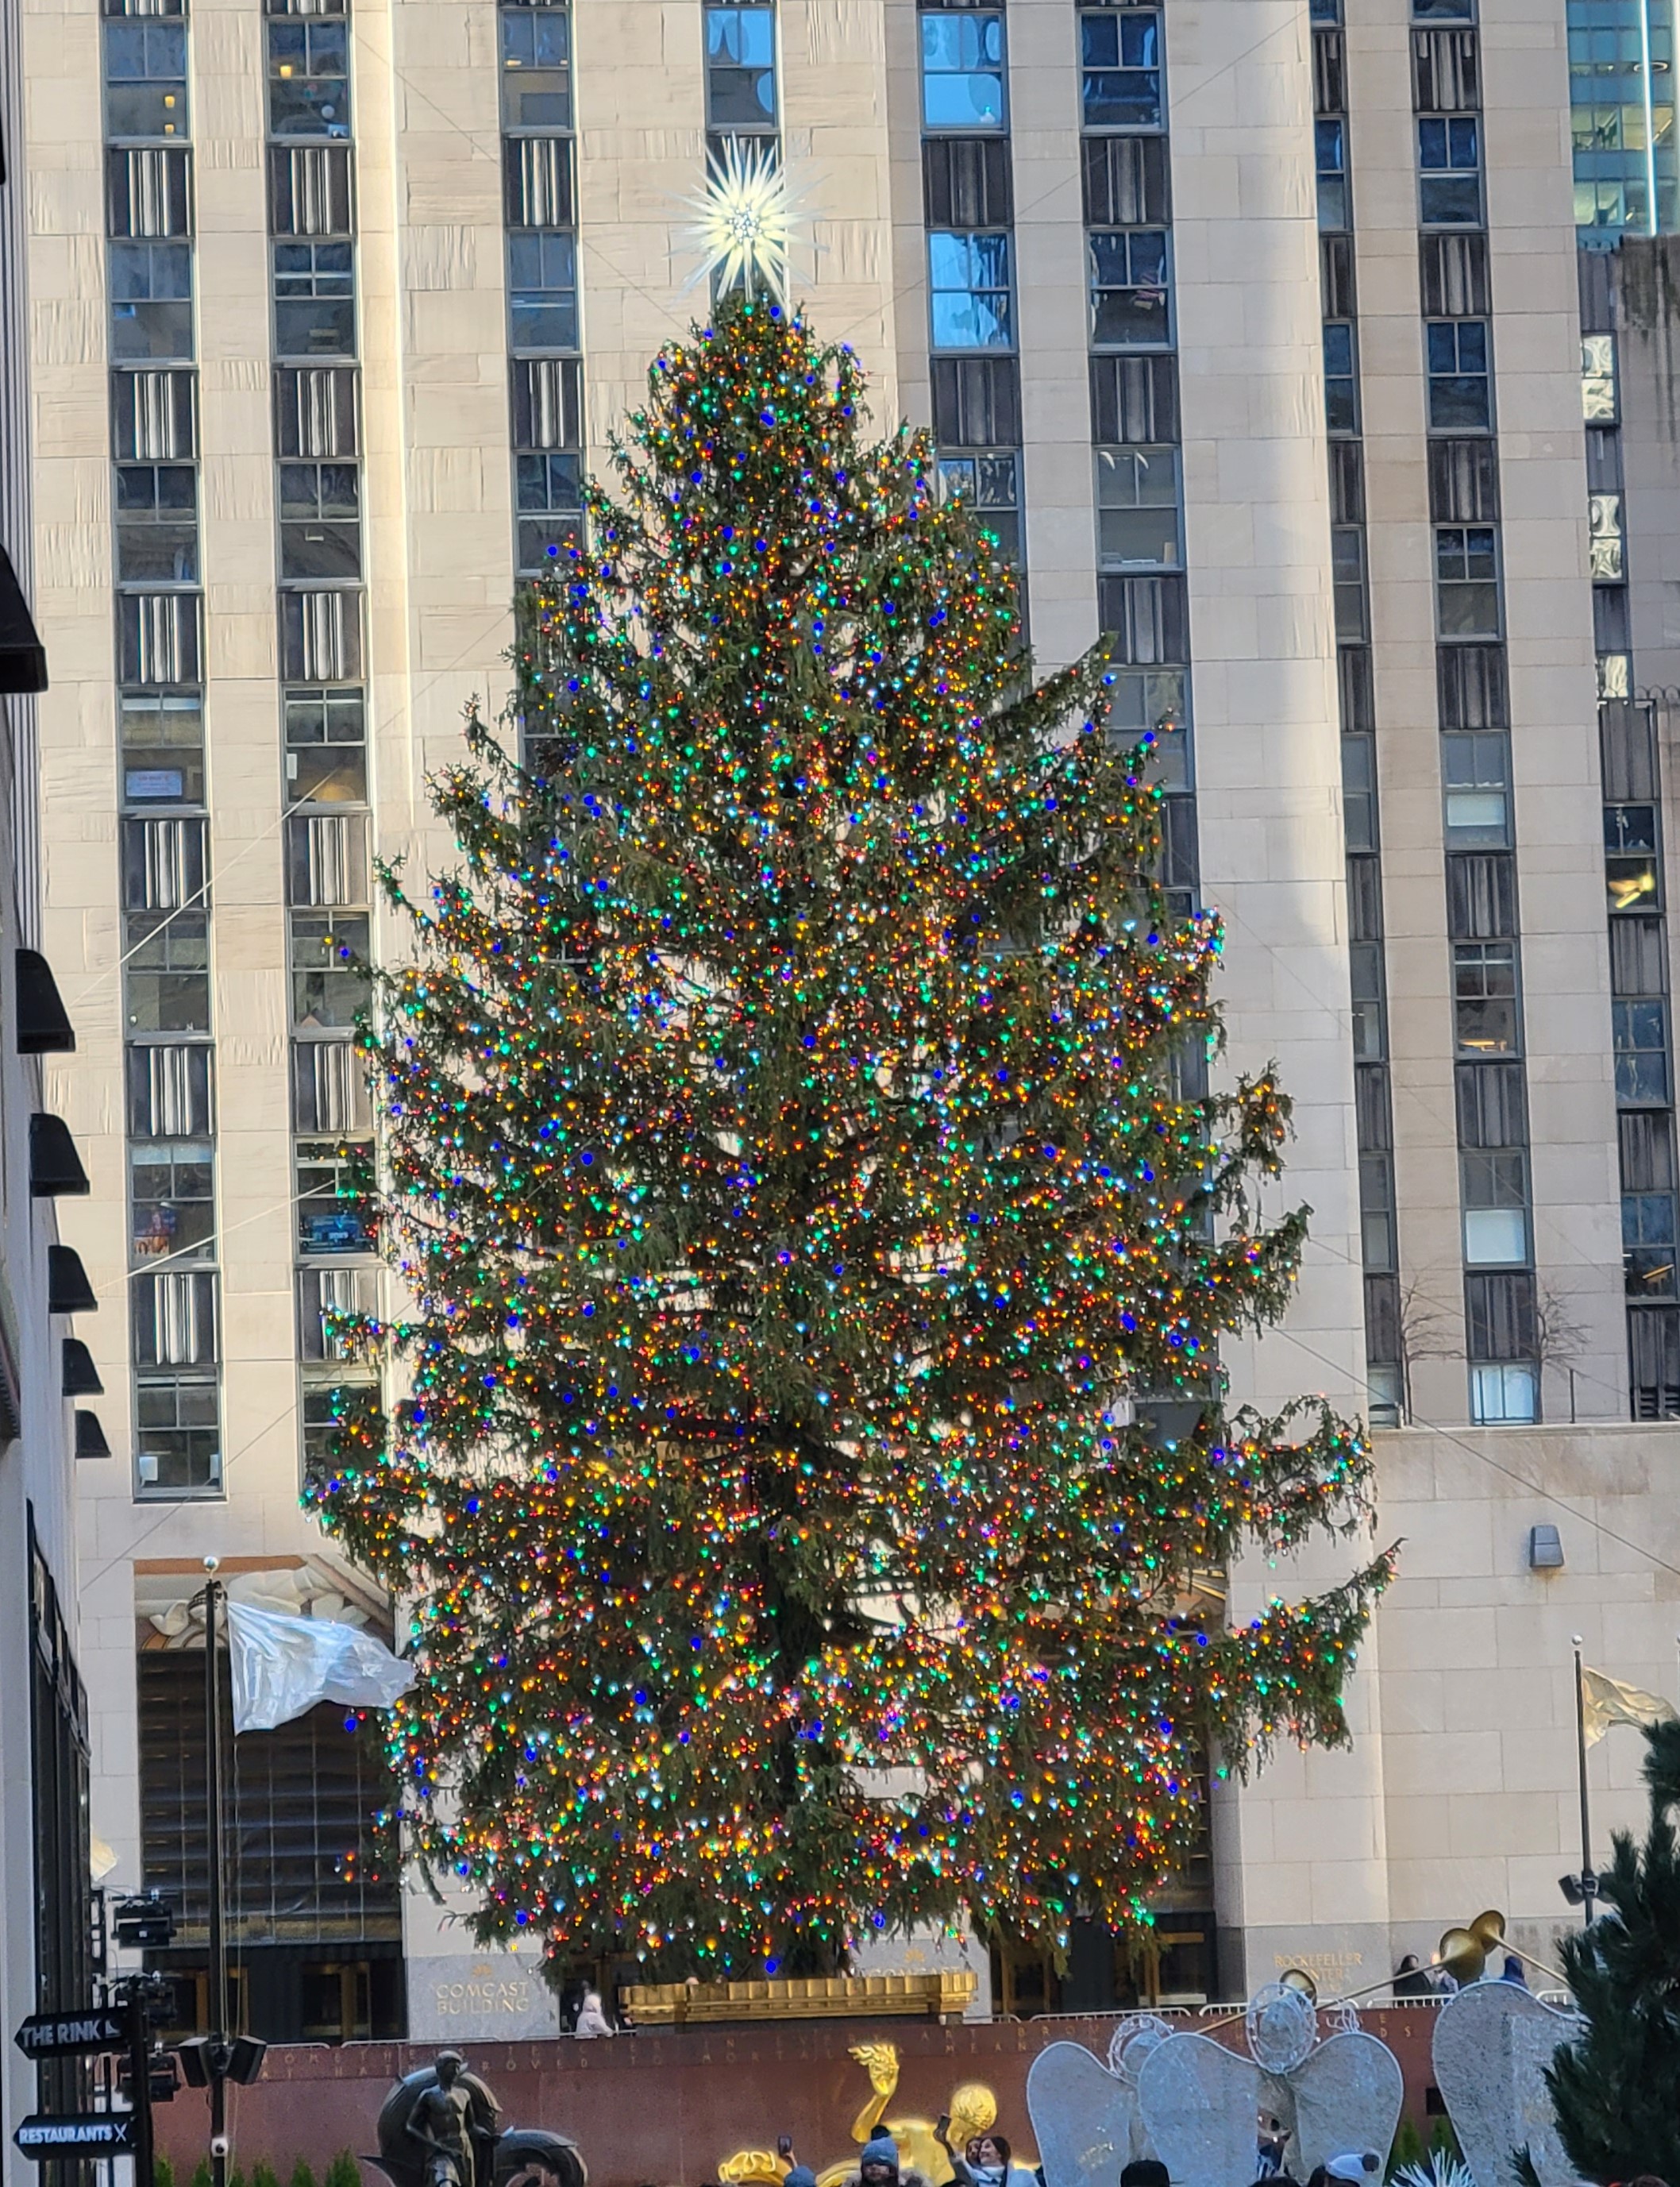 The Rockefeller Center Christmas Tree in 2022.